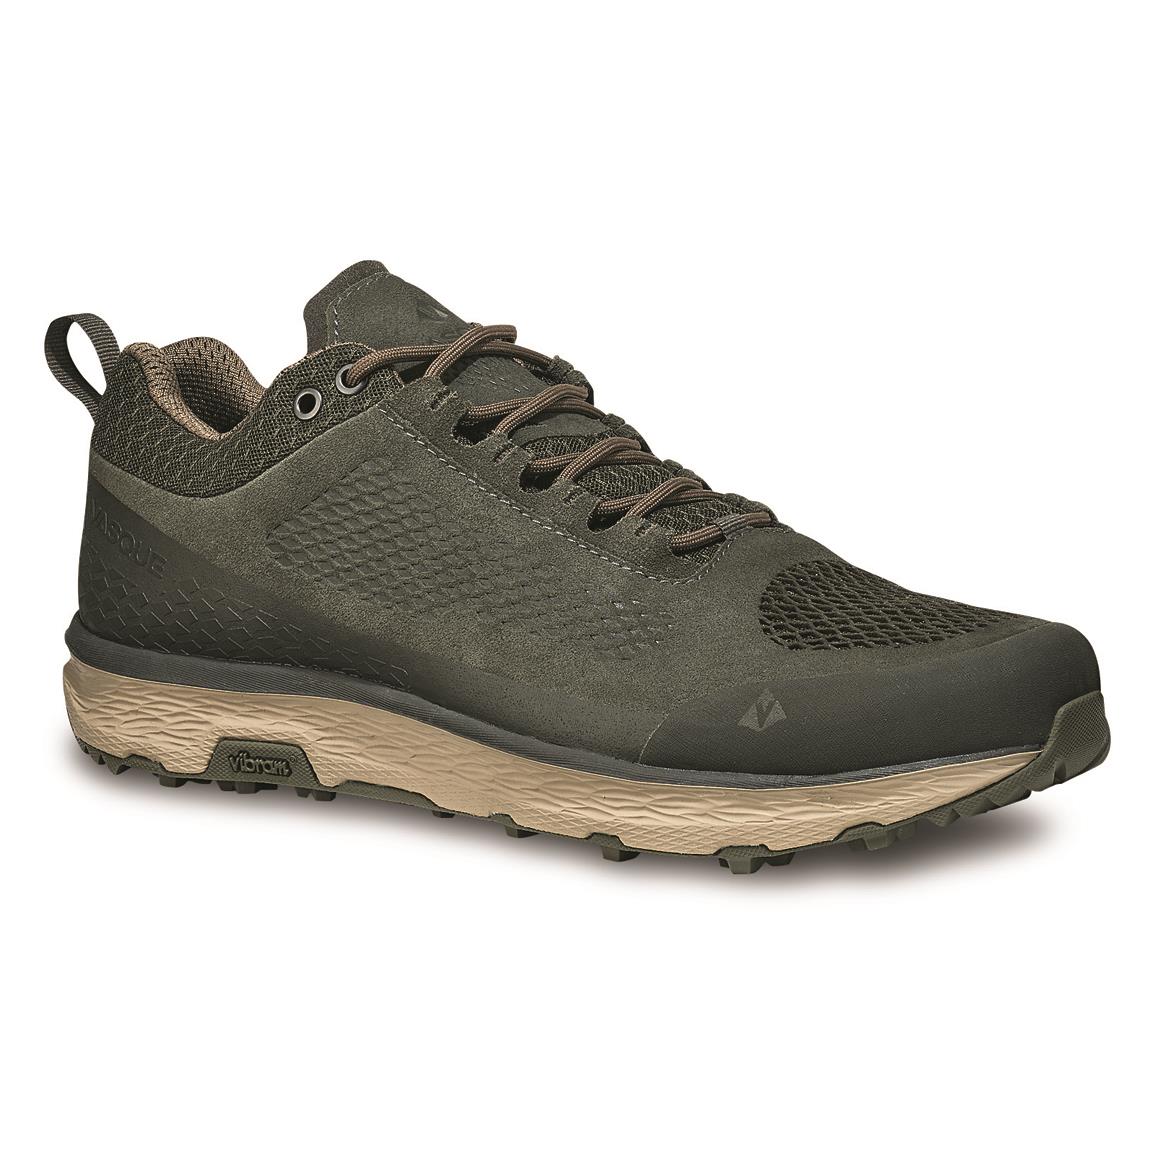 Vasque Men's Breeze LT ECO Waterproof Hiking Shoes, Beluga